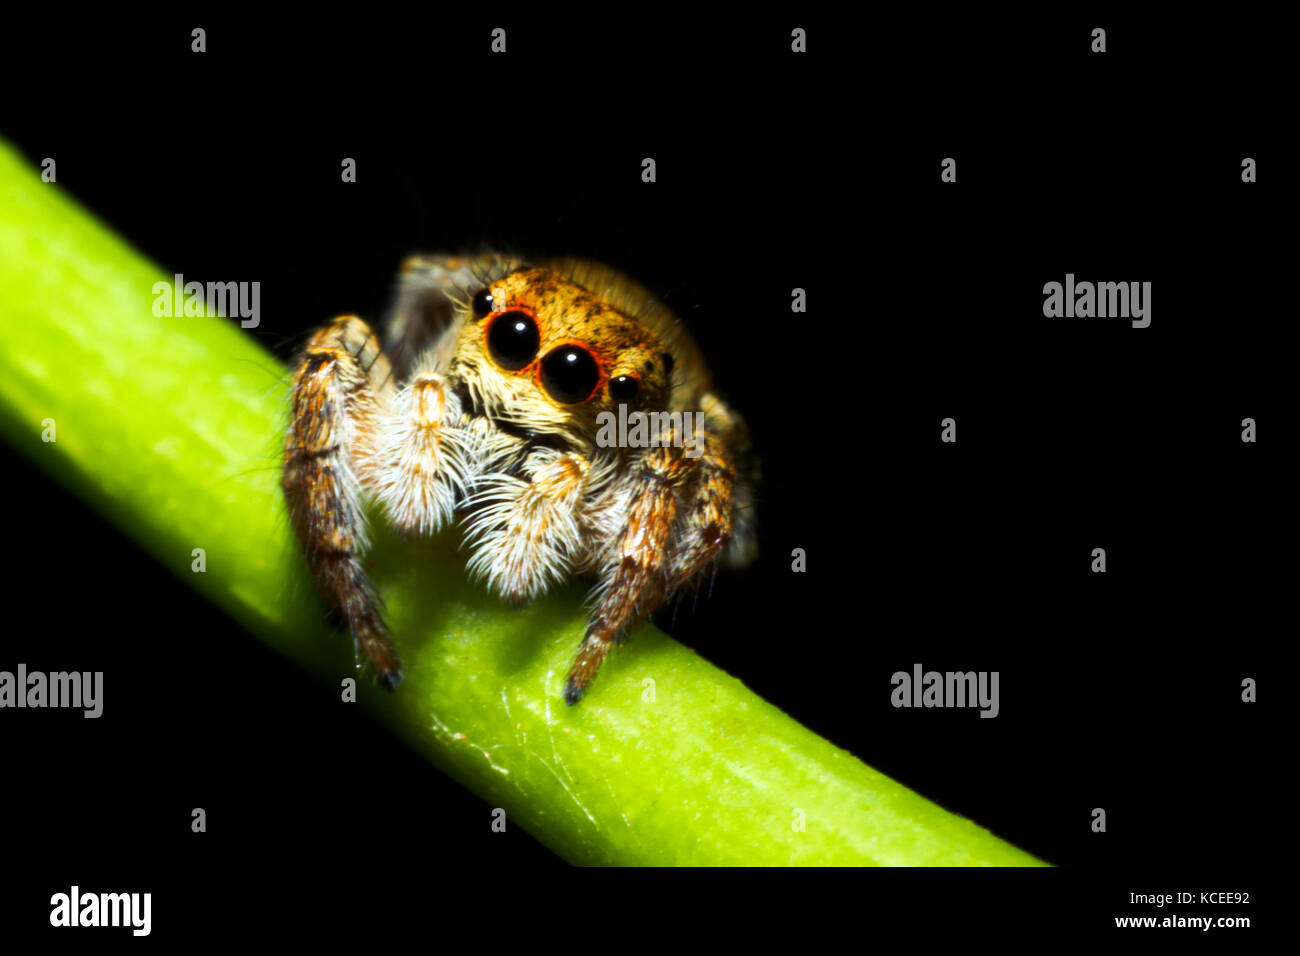 Jumpimg Asianellus festívus (araignée) - Italie Banque D'Images